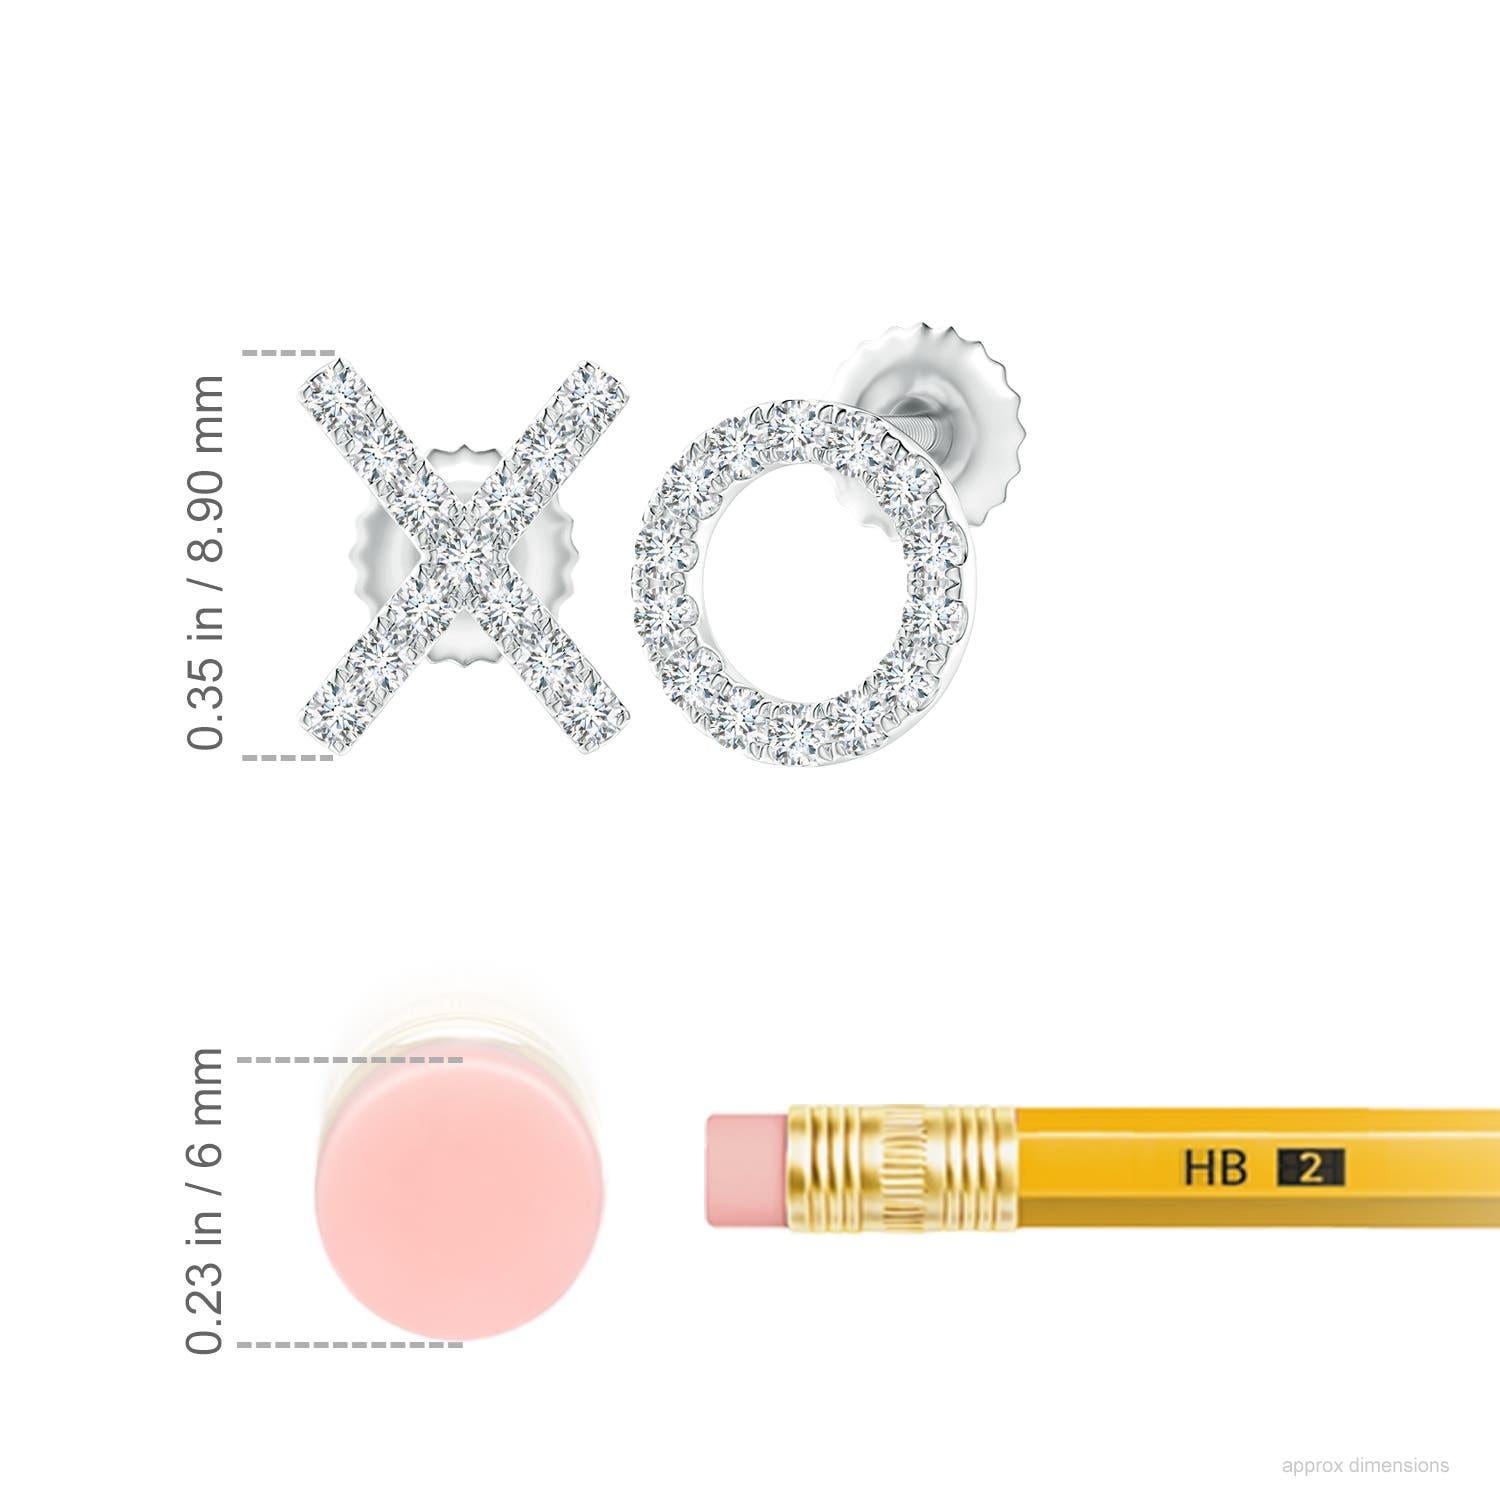 Die XO-Ohrstecker aus 14 Karat Weißgold sind einfach faszinierend. Funkelnde runde Diamanten in einer U-Pava-Fassung schmücken das XO-Muster und verleihen diesen bezaubernden Ohrsteckern eine schillernde Note.
Der Diamant ist der Geburtsstein des